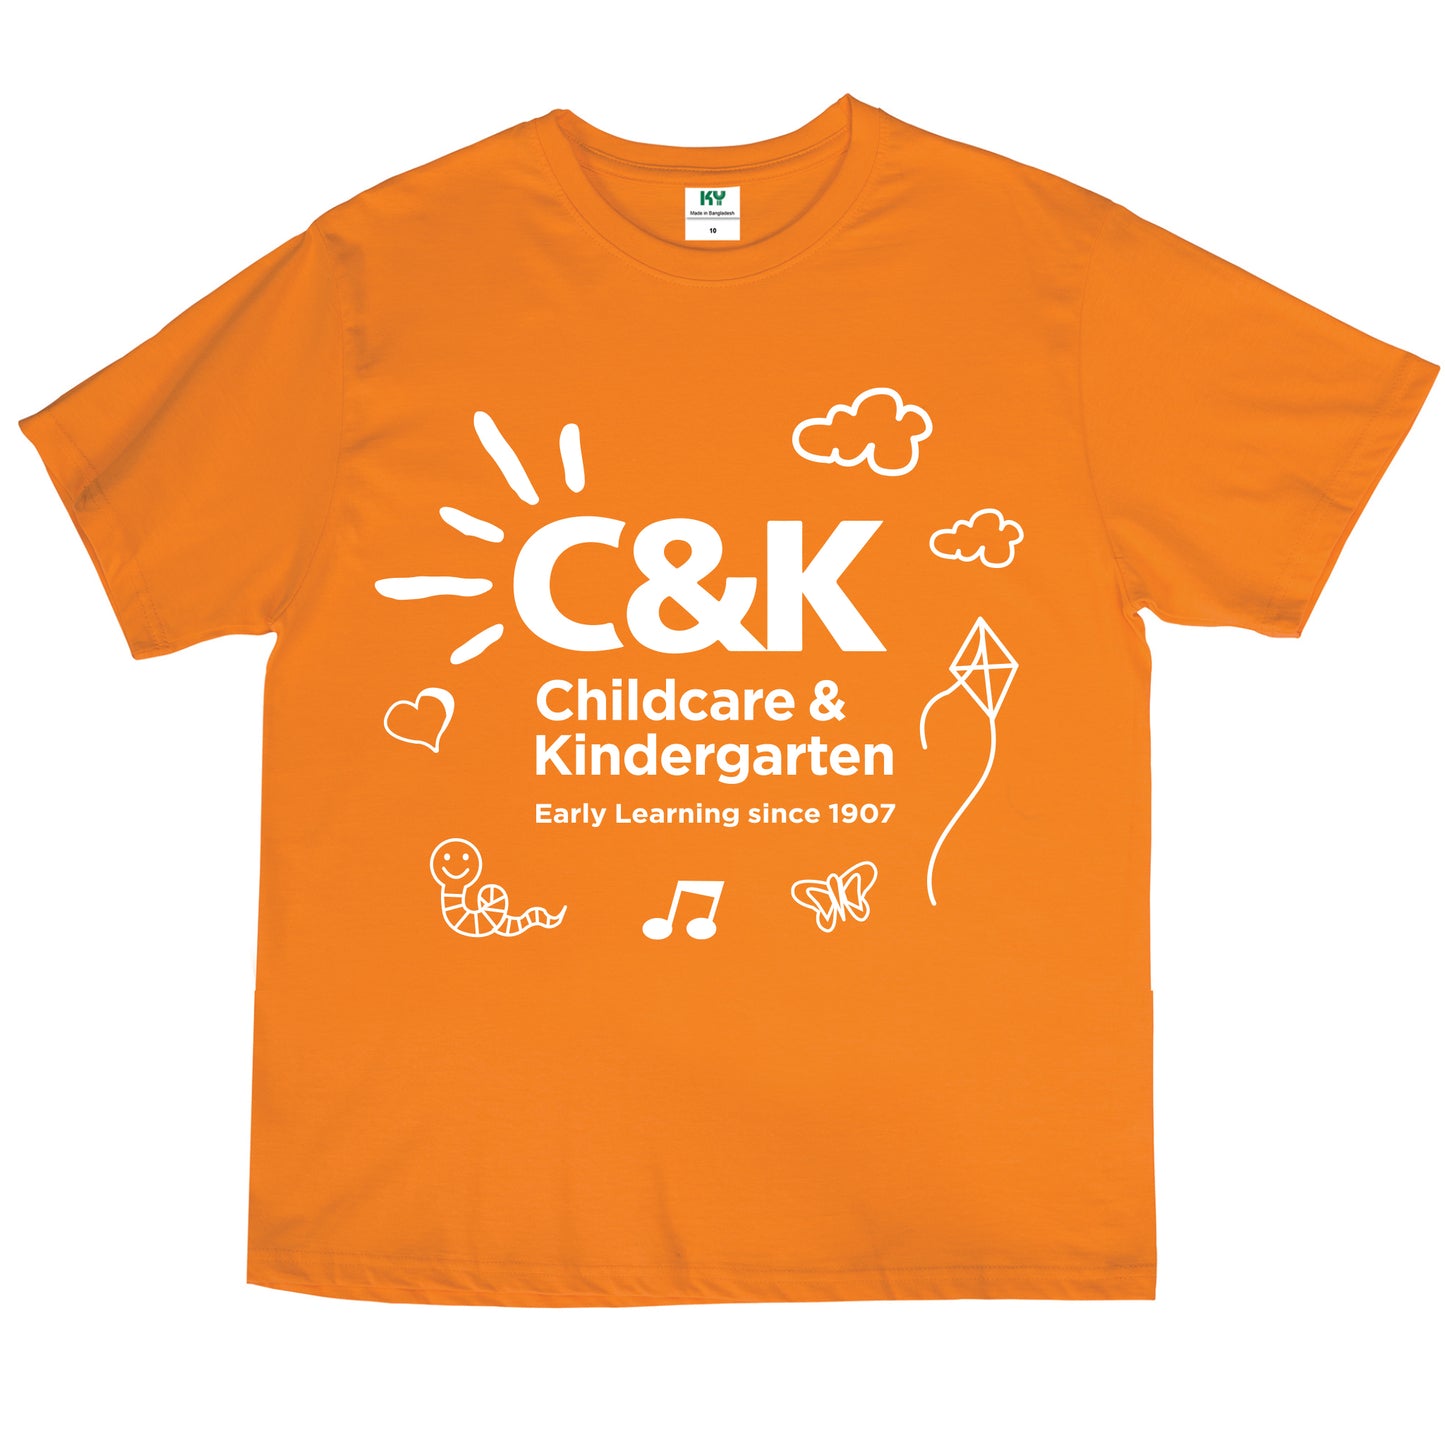 C&K Children's T-shirt (Orange)